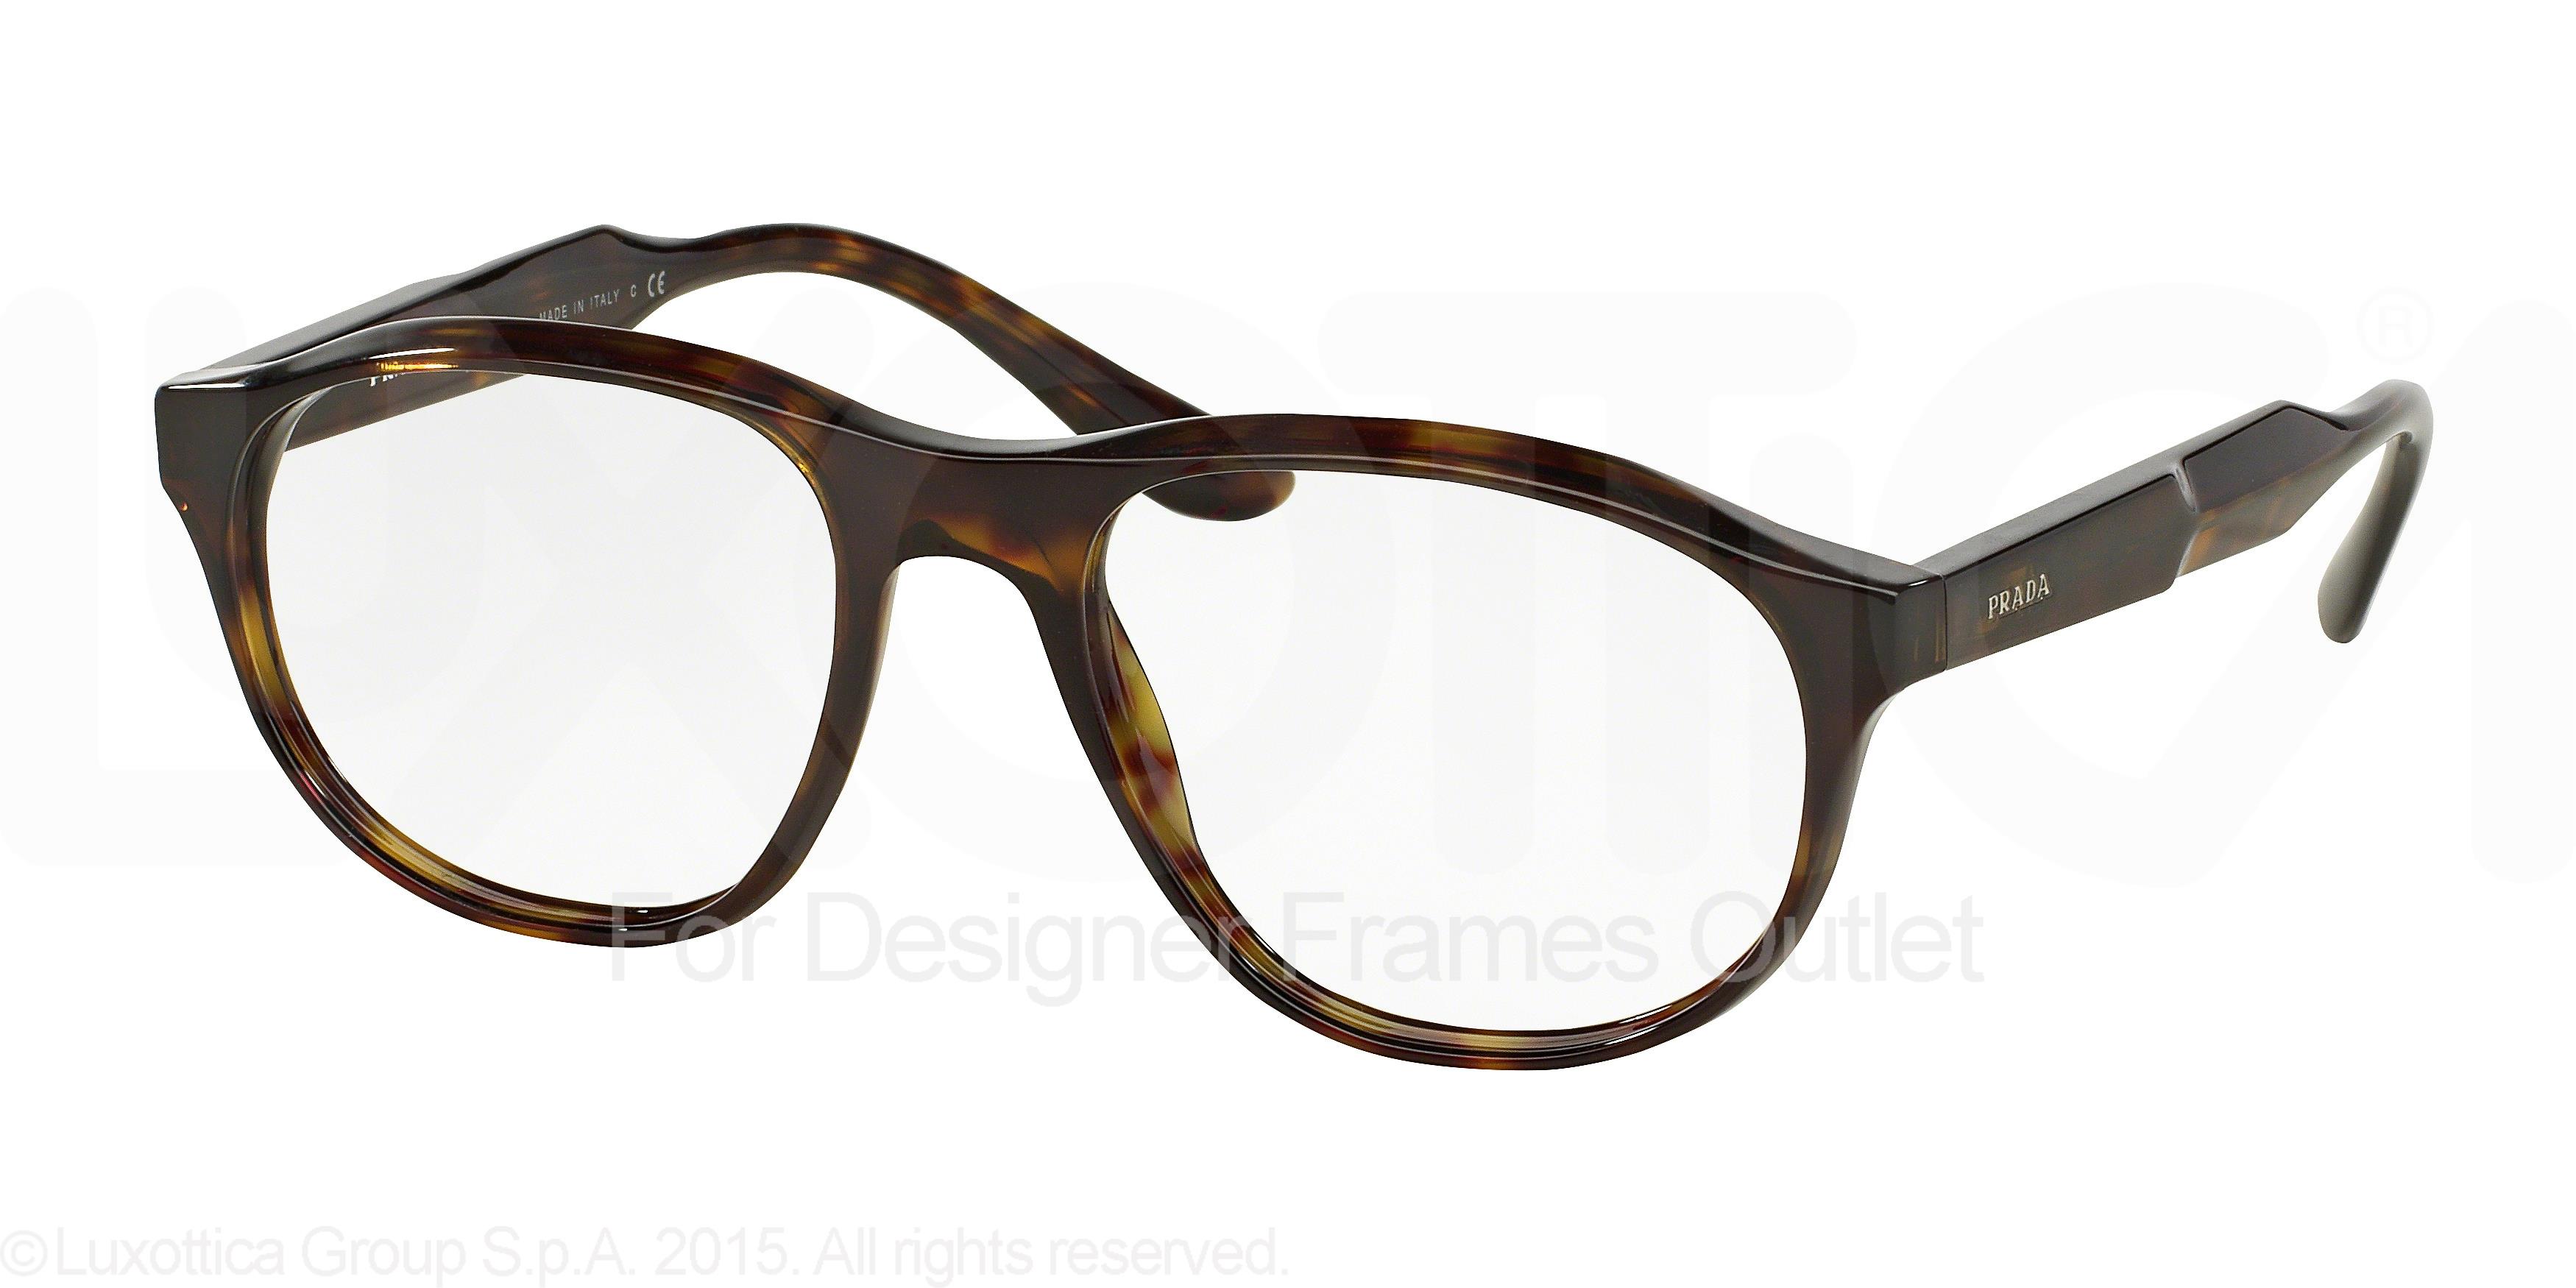 Designer Frames Outlet. Prada Eyeglasses PR12SV